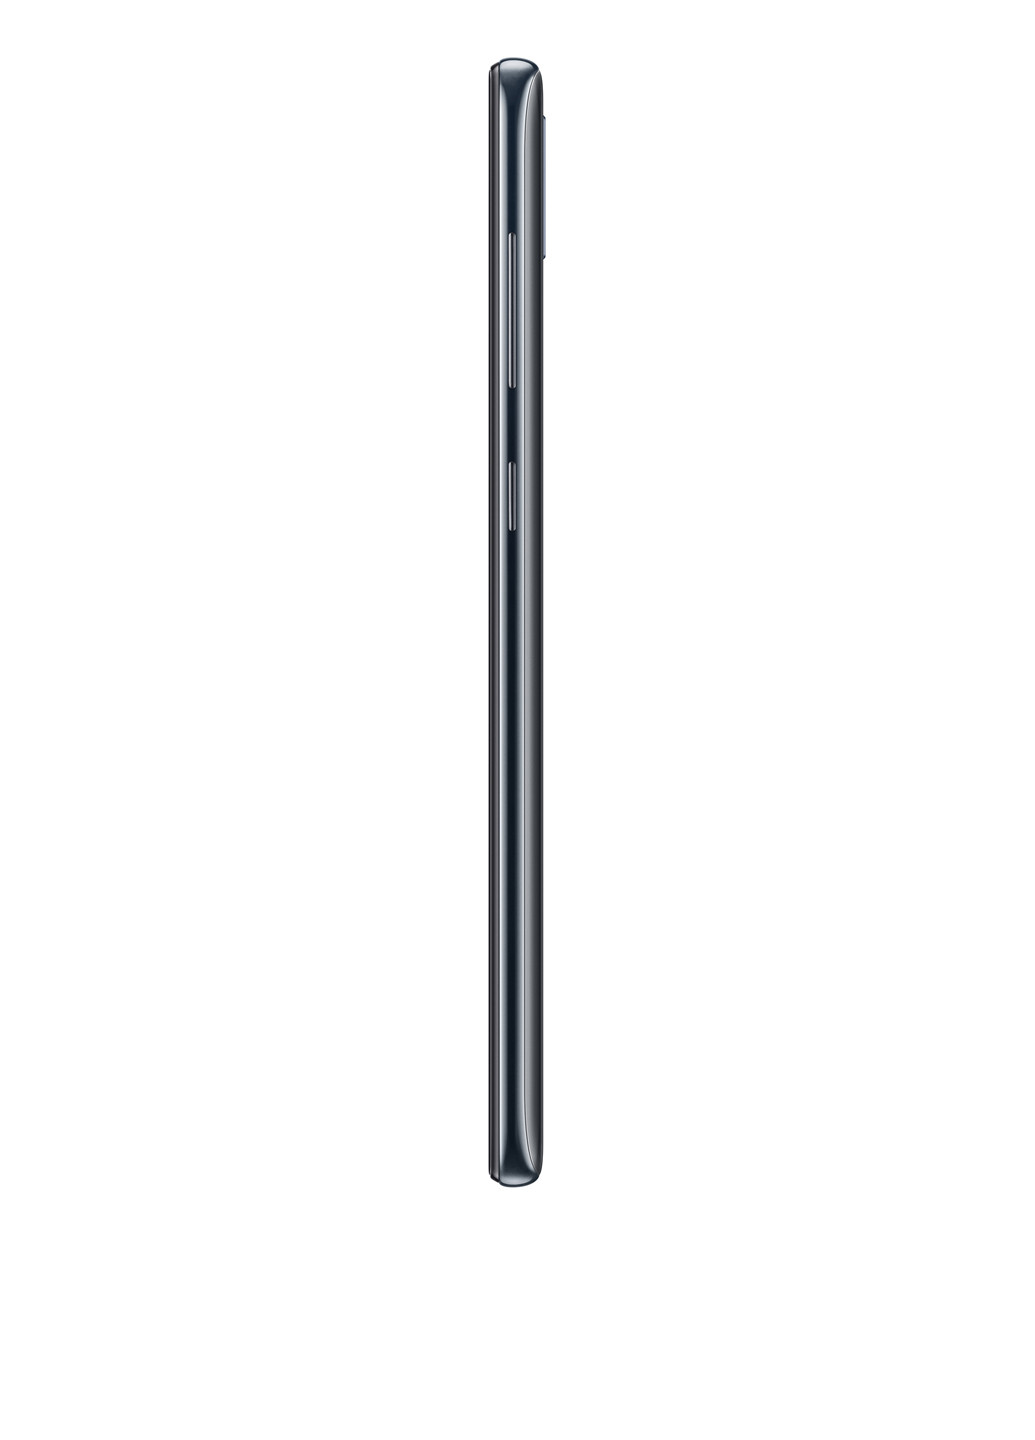 Смартфон Galaxy A30 4 / 64GB Black (SM-A305FZKOSEK) Samsung Galaxy A30 4/64GB Black (SM-A305FZKOSEK) чорний